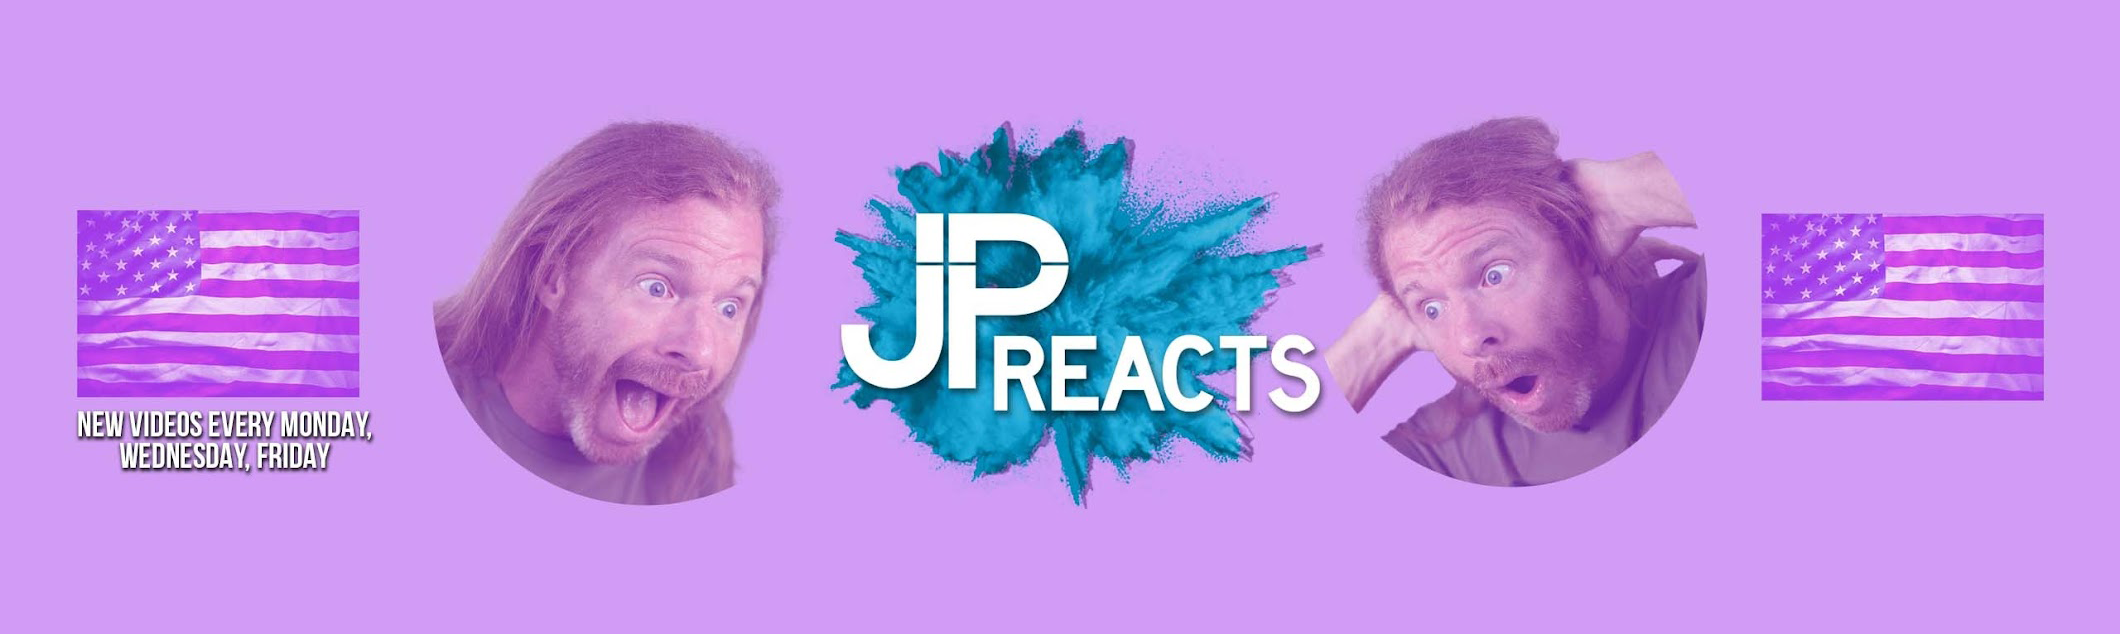 Welcome, JP Reacts fan!